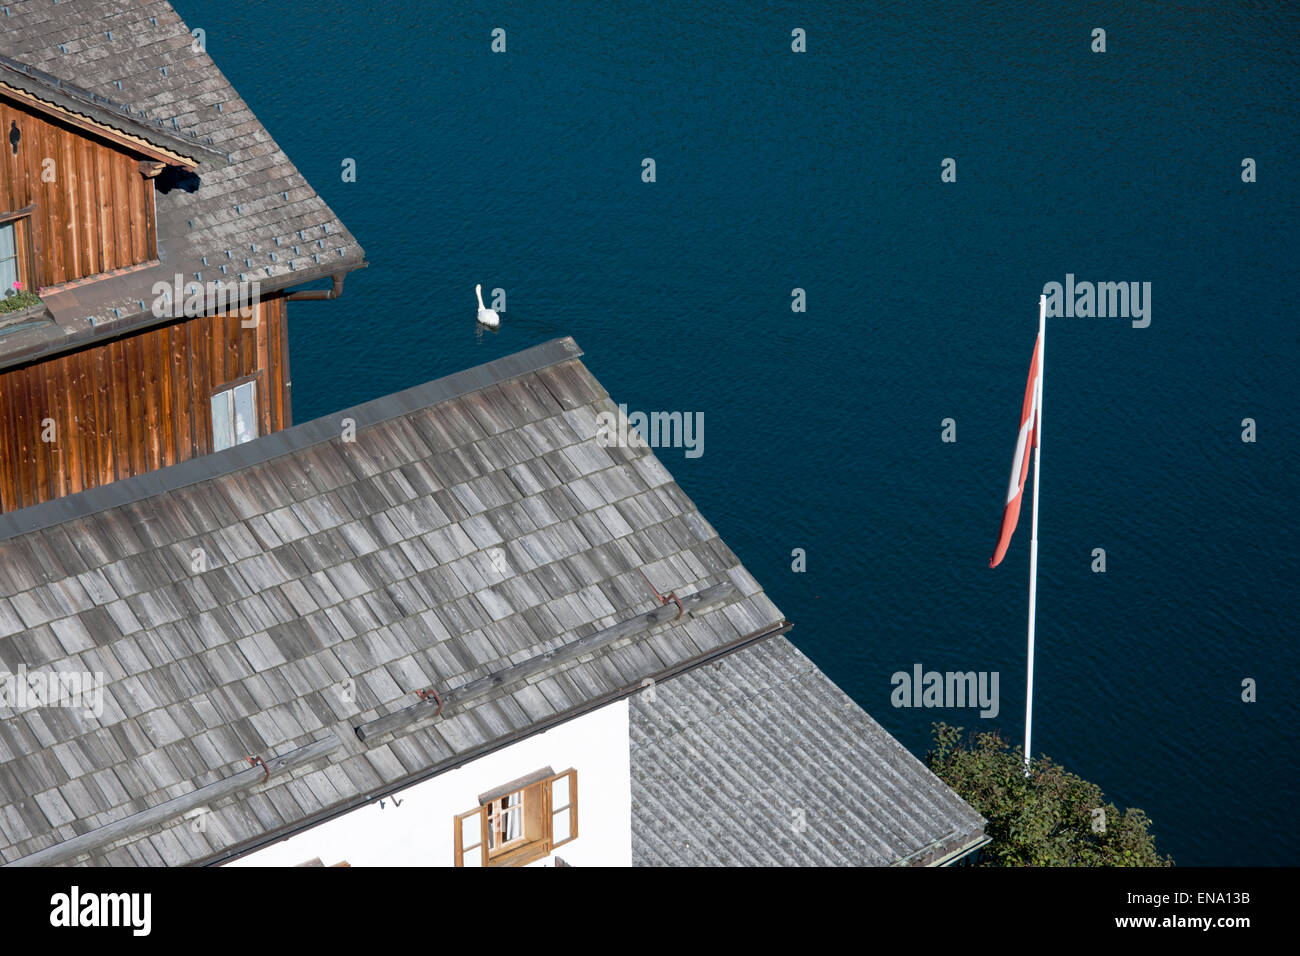 Hallstatt Dächer von oben gesehen mit Schwan und österreichischer Fahne, Salzkammergut, Austria Foto de stock